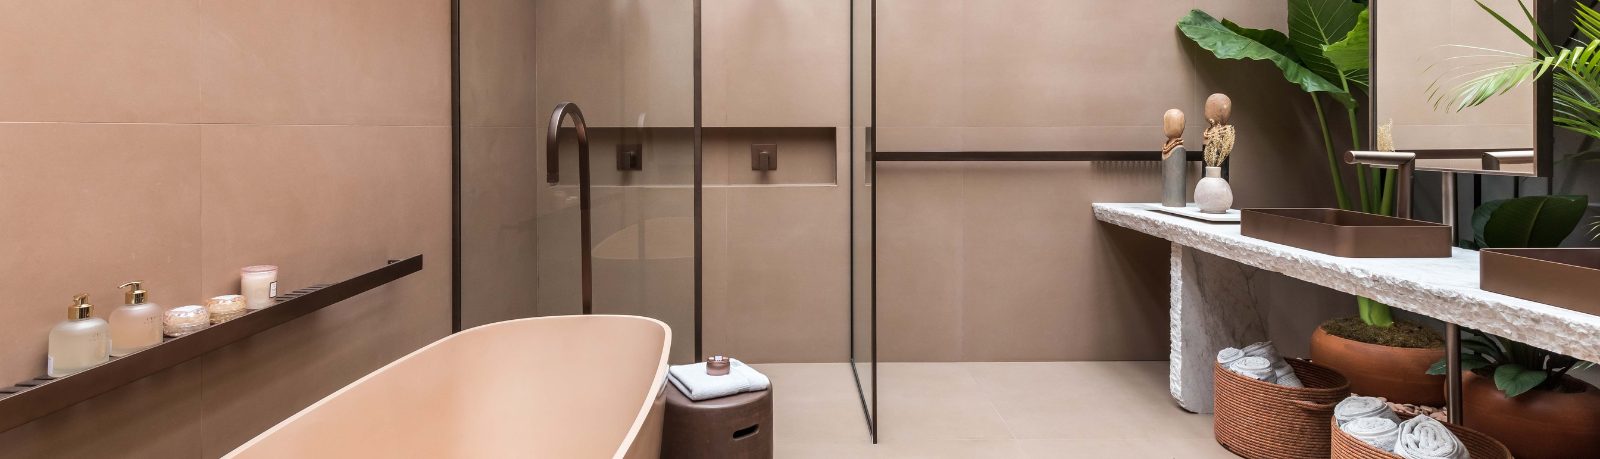 Spa em casa: projetos de banheiro em mármore para focar no bem-estar